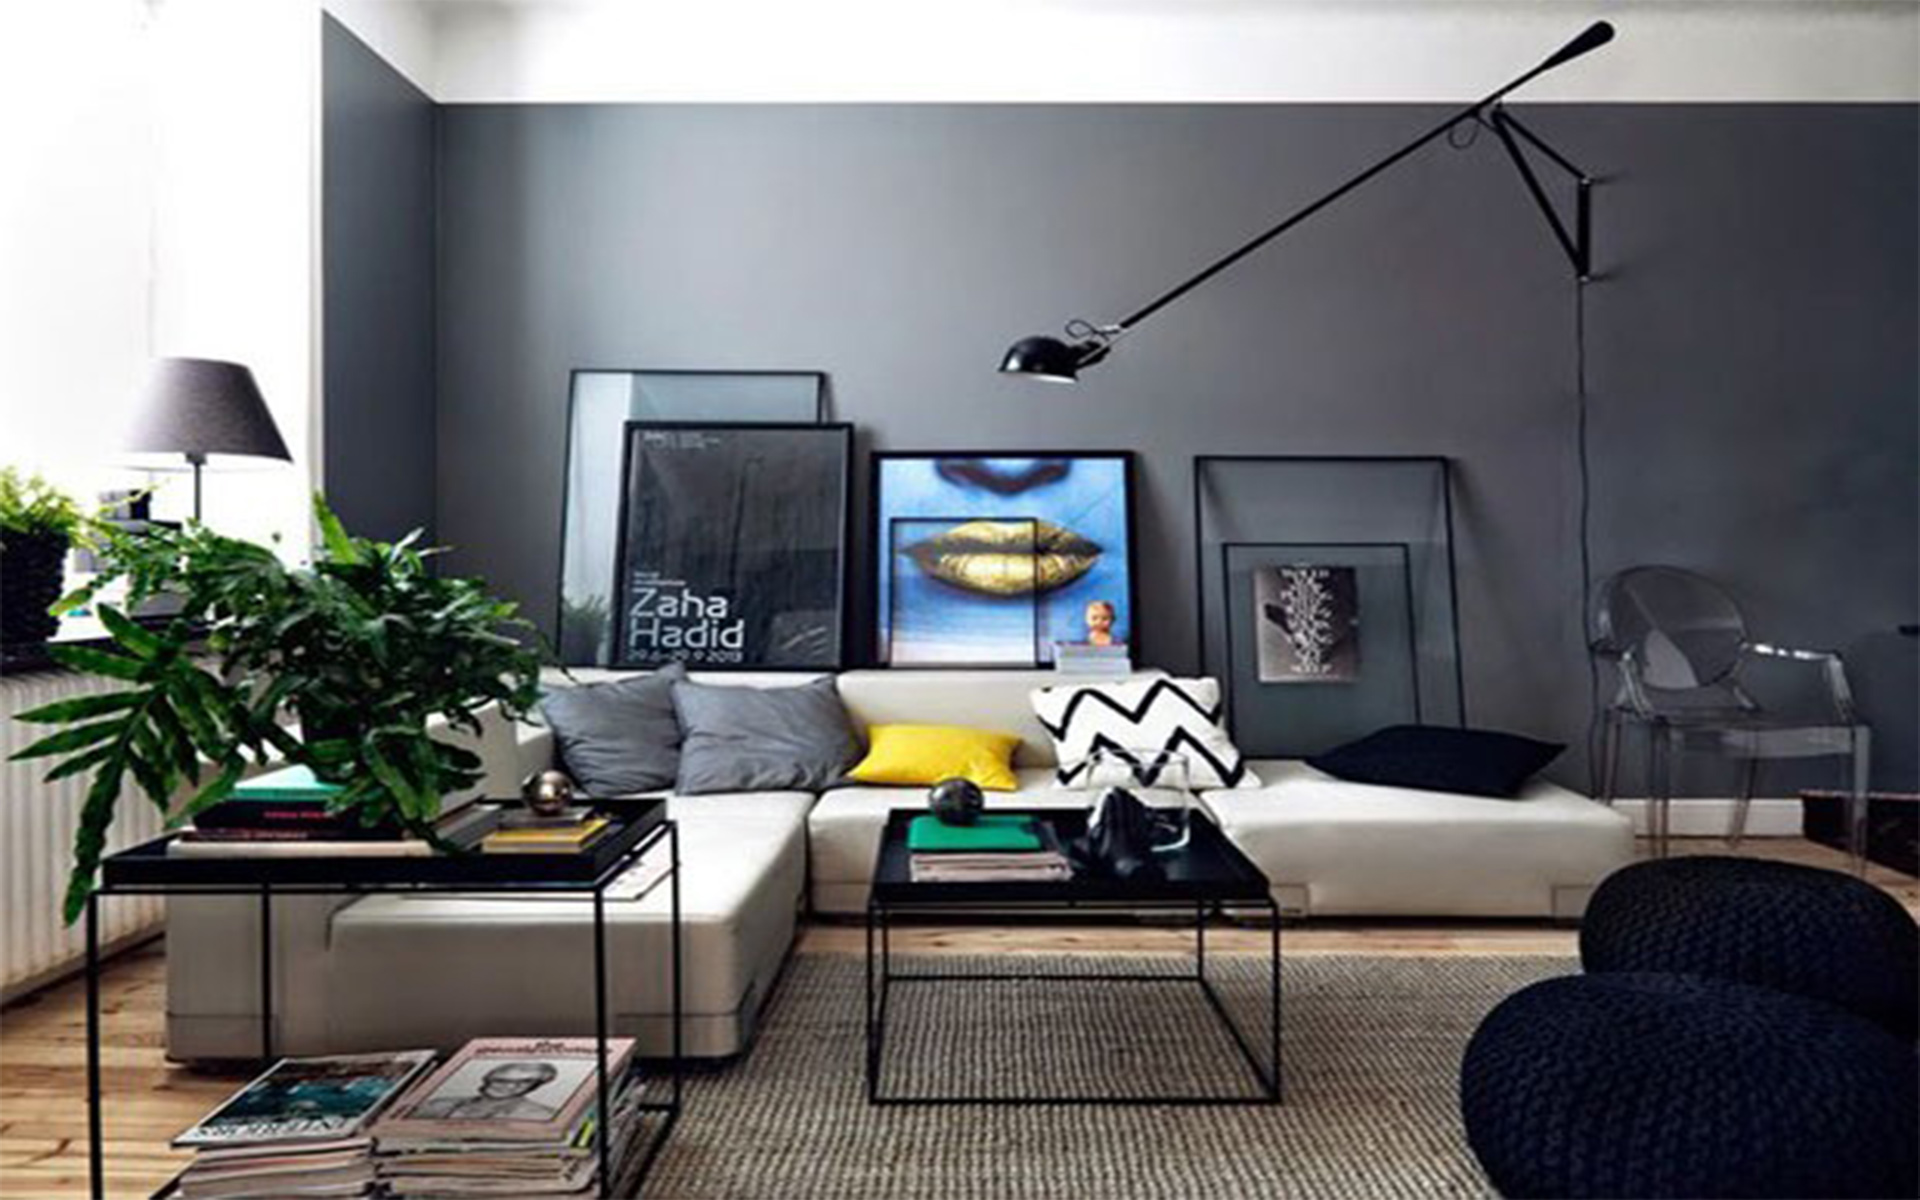 Sala de estar com decoração contemporânea e minimalista